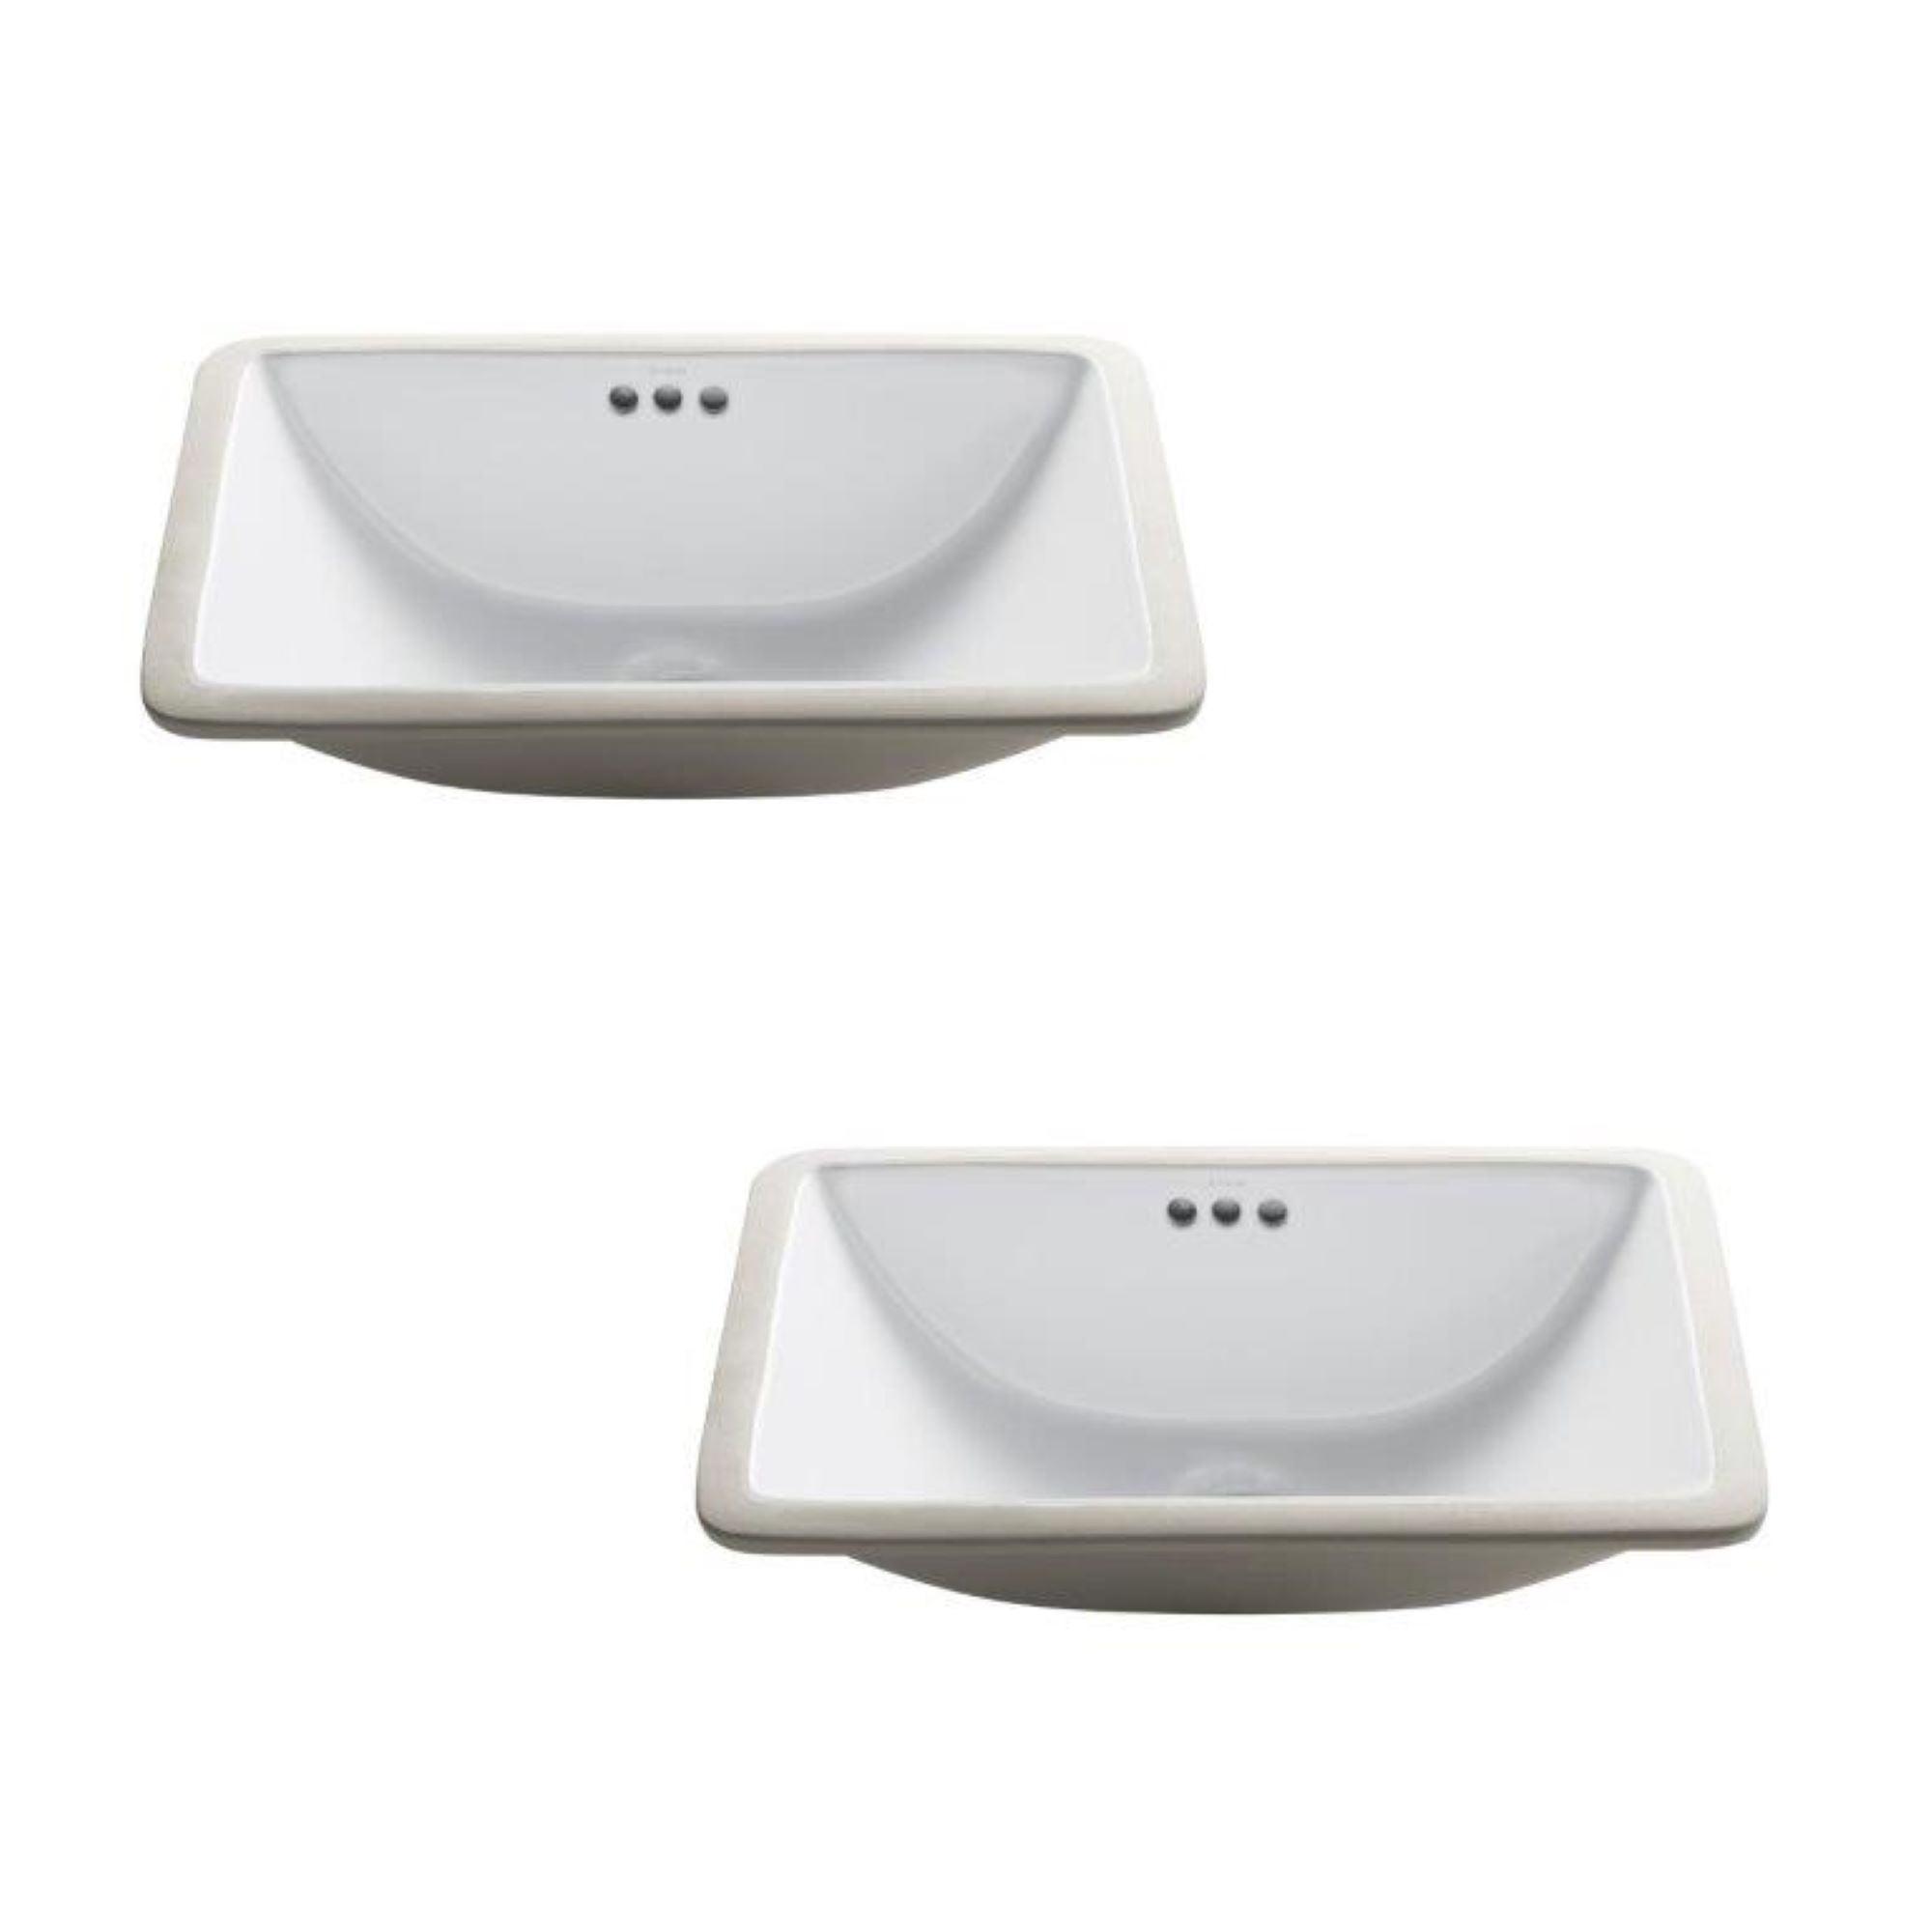 Elavo Classic White Ceramic 20.63" Undermount Bathroom Sink